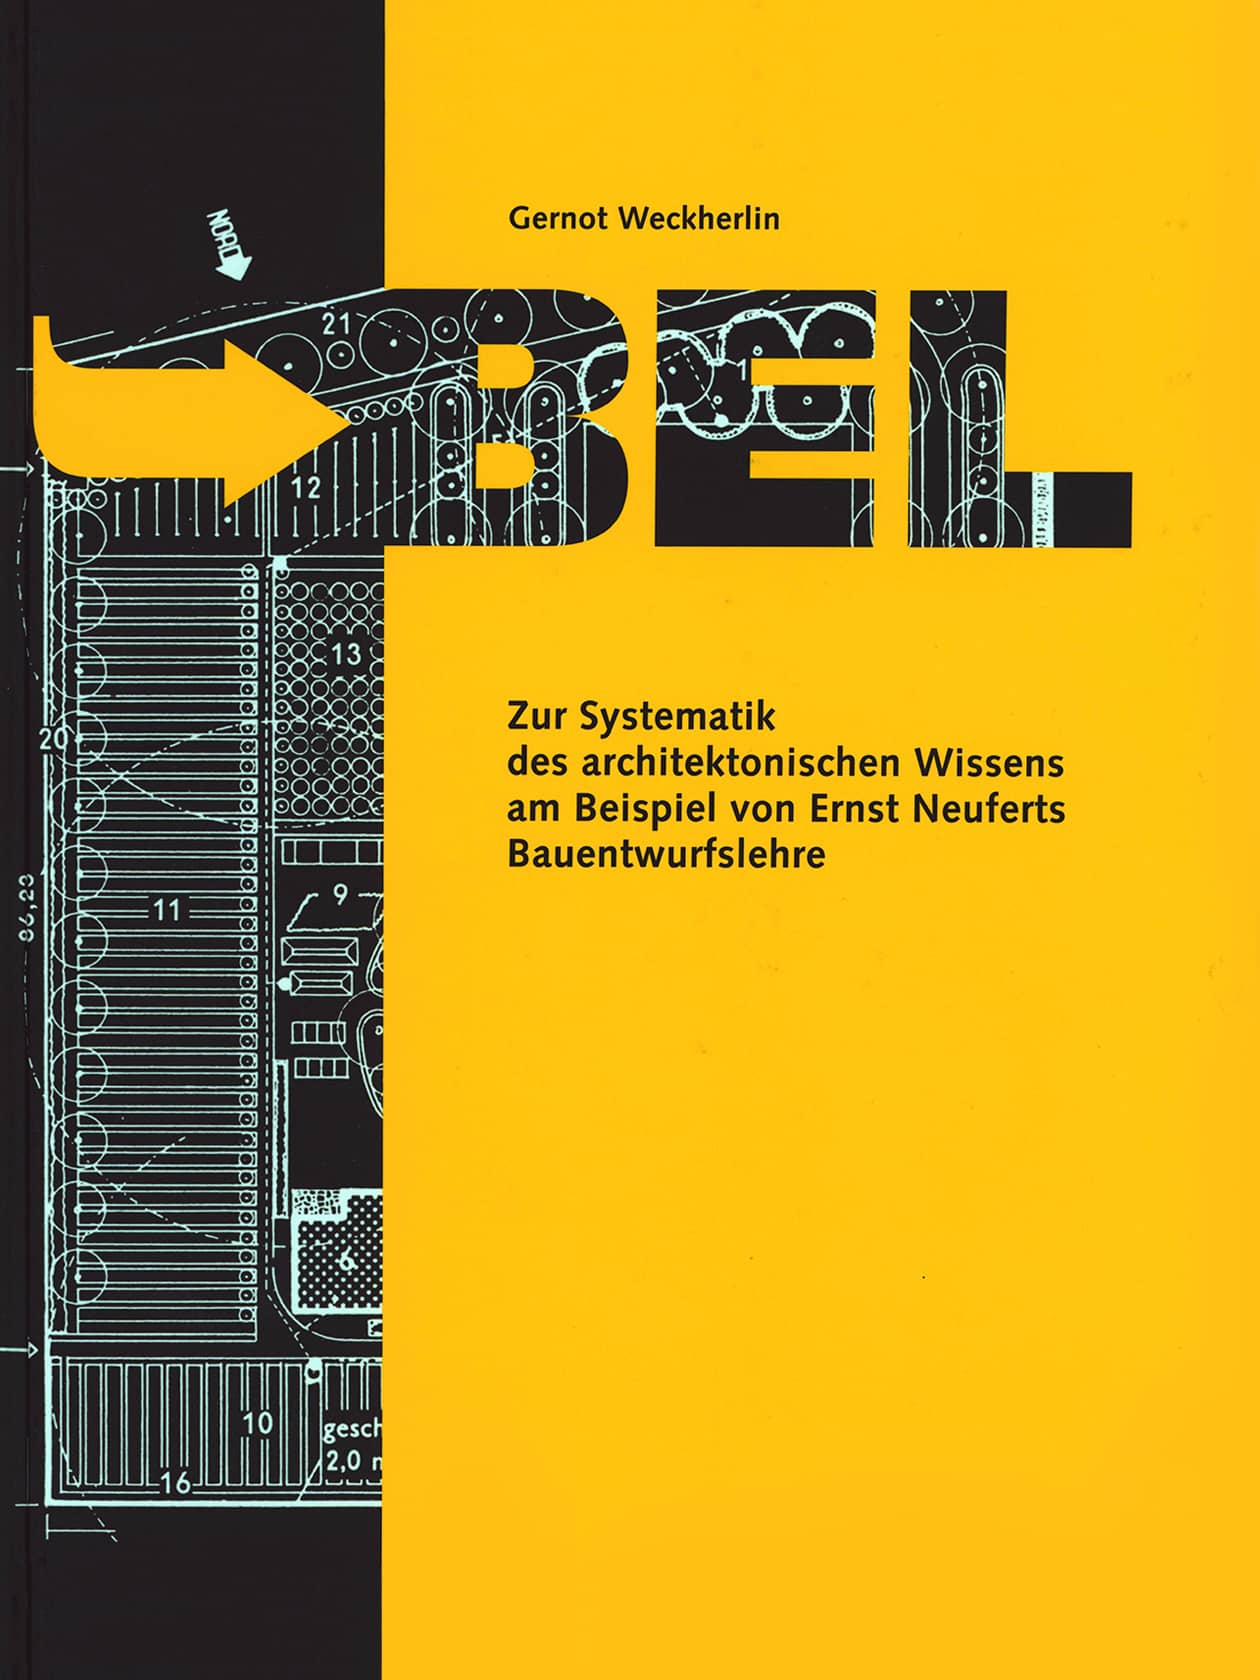 Titelbild von Gernot Weckherlin BEL zur Systematik des architektonischen Wissens am Beispiel von Ernst Neuferts Bauentwurfslehre